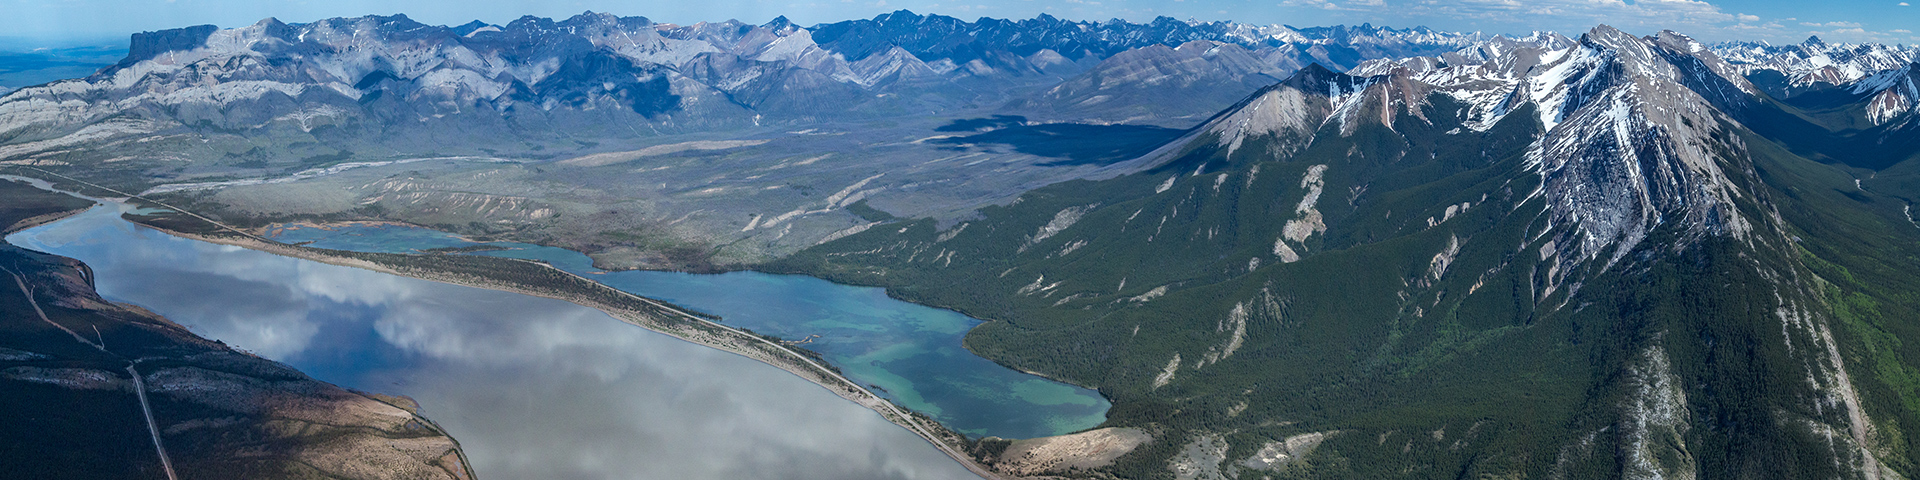 Aerial panorama of Jasper Lake